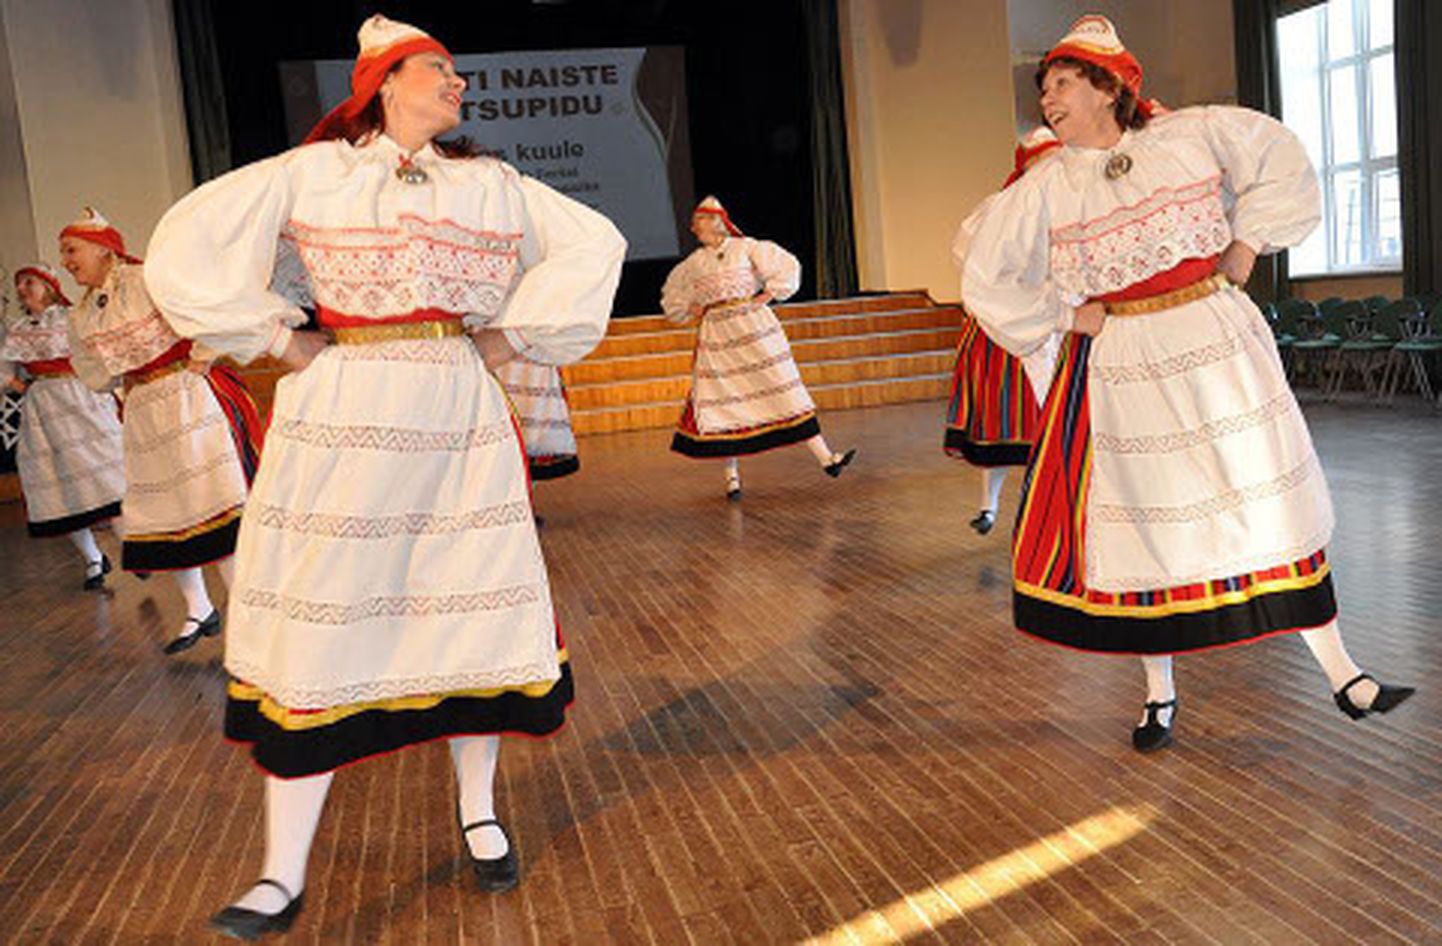 Jõhvi naisrühm Gevi (pildil) ja Tammiku naisrühm tantsivad II Eesti naiste tantsupeol N1 rühmaliigis, kuuludes Eesti naisrahvatantsurühmade tippude hulka.